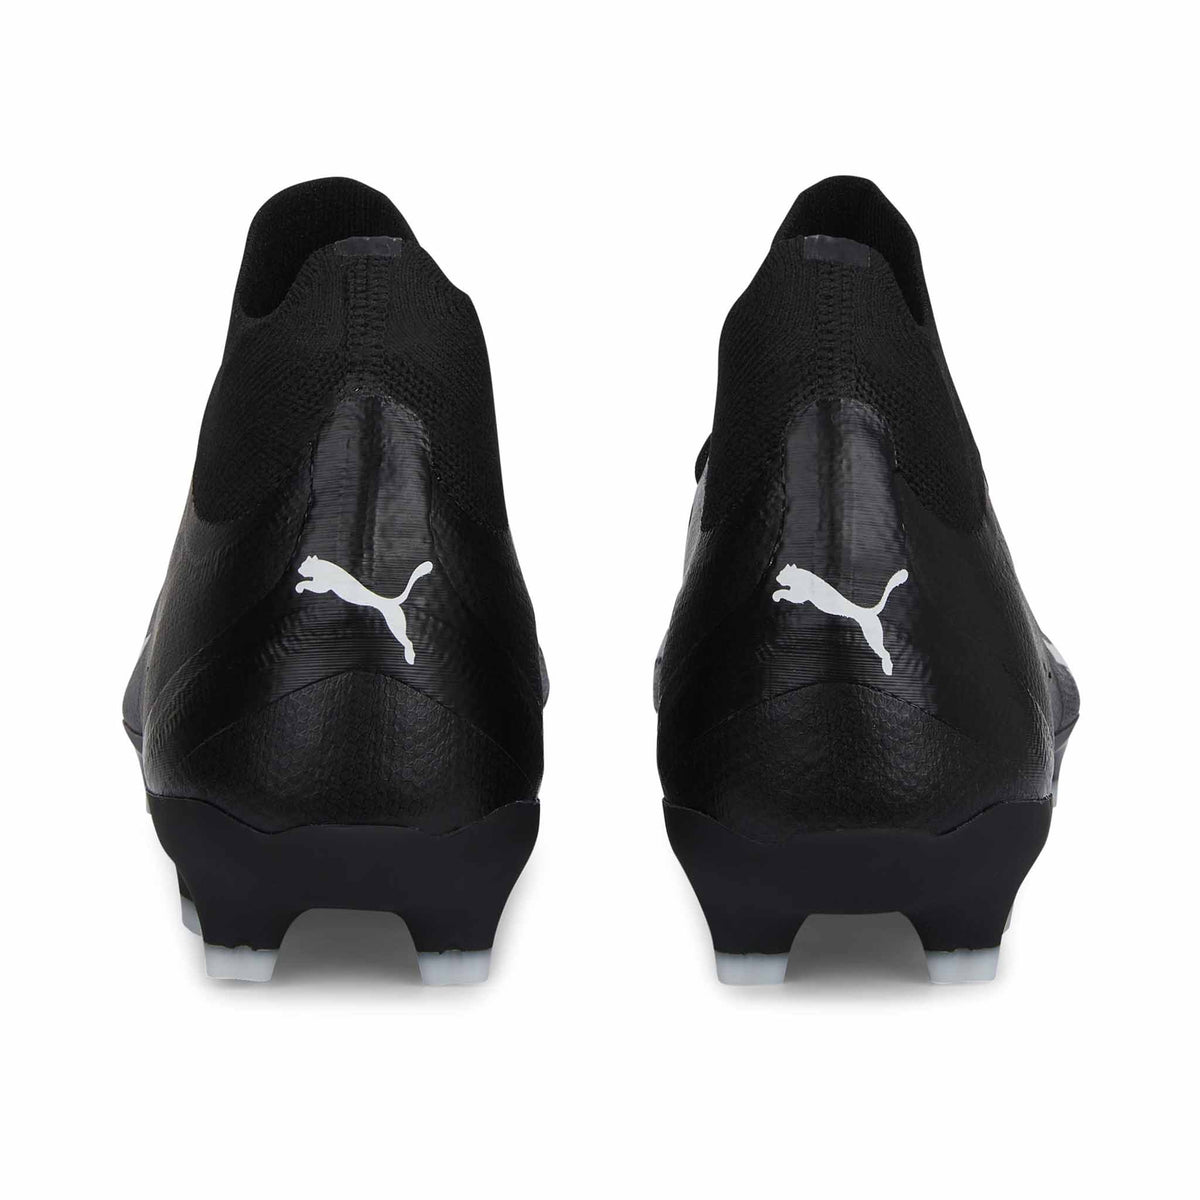 Puma Ultra Pro FG/AG chaussures de soccer a crampons - Puma Black / Puma White